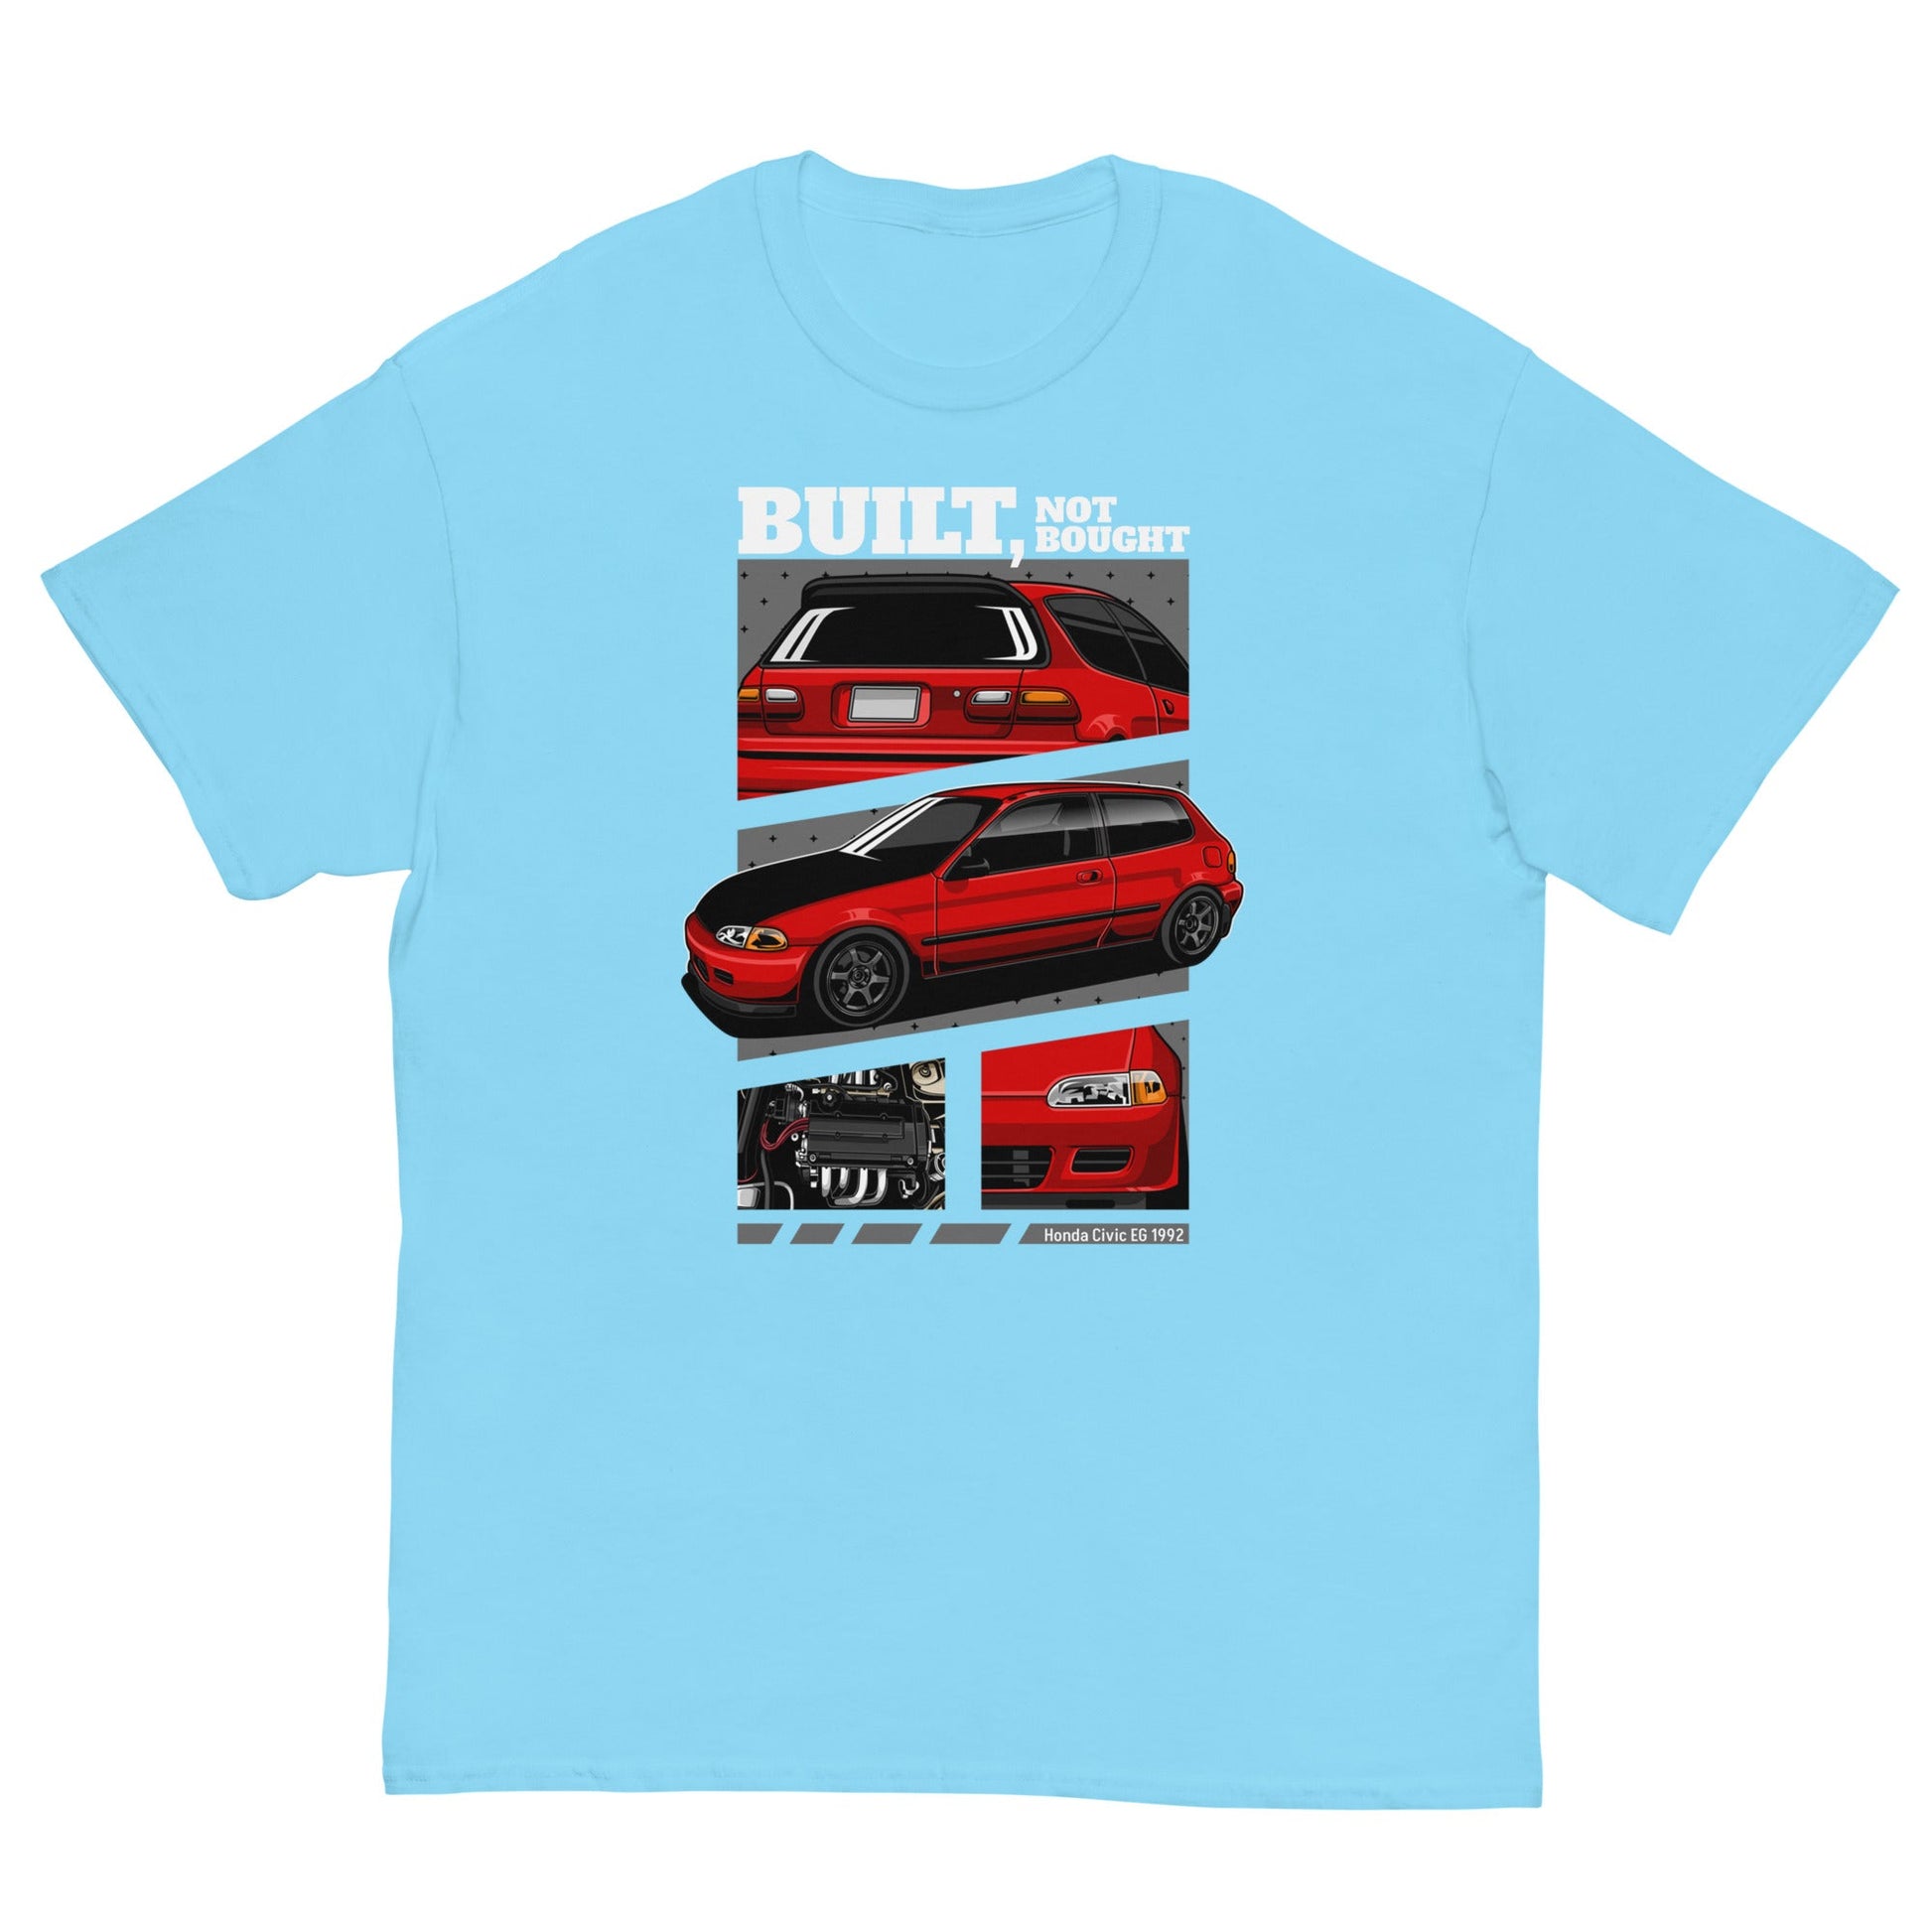 red Honda Civic EG hatchback T-shirt 1992 baby blue light